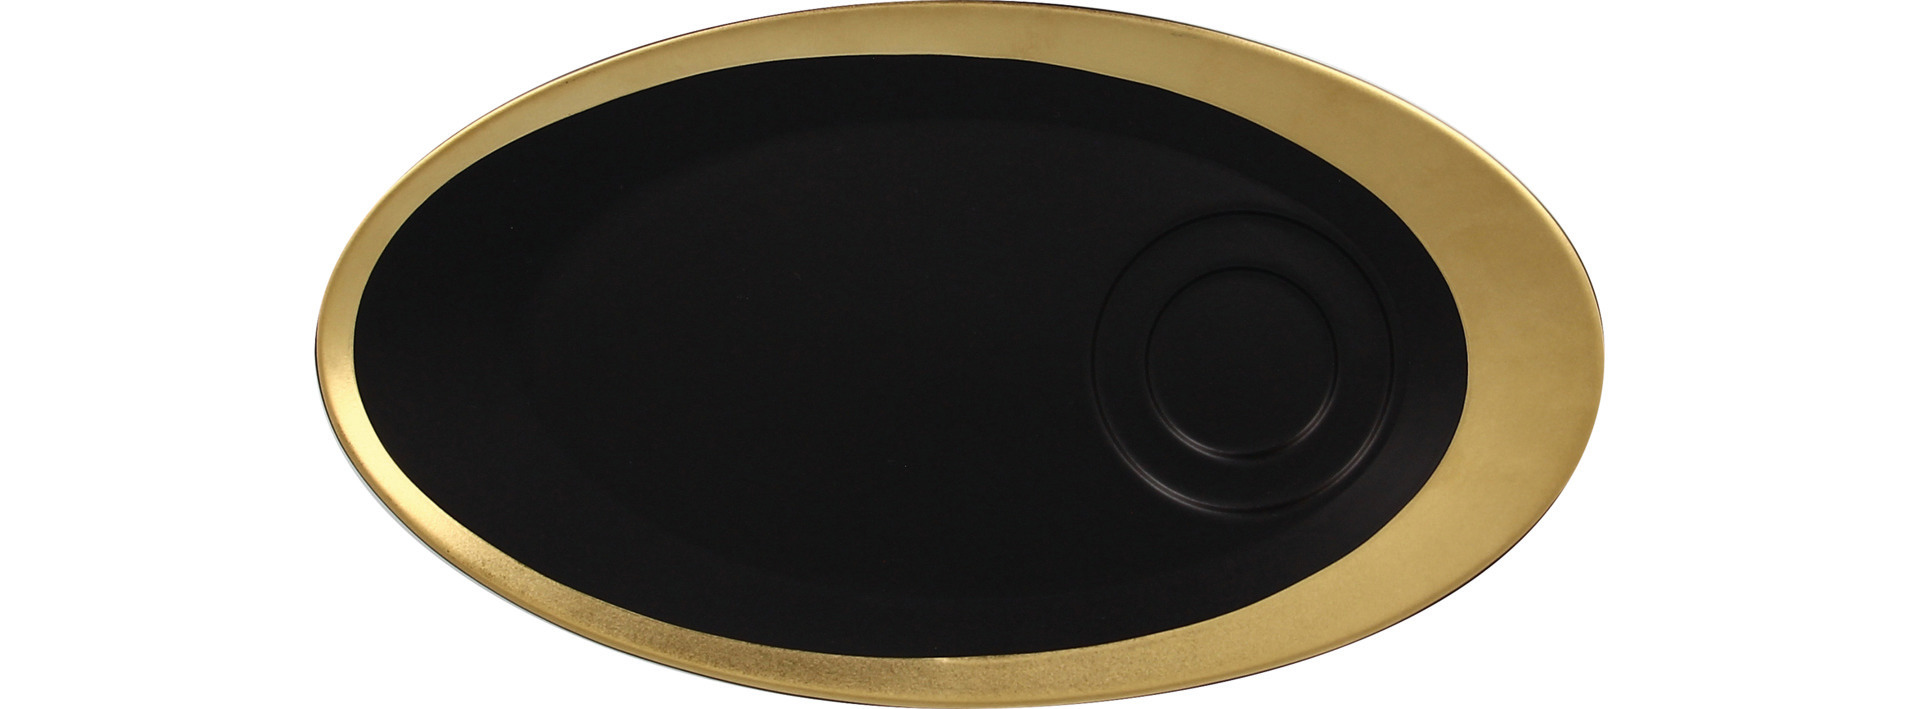 Untertasse oval 290 x 160 mm für GICU23/GICU09 schwarz / gold